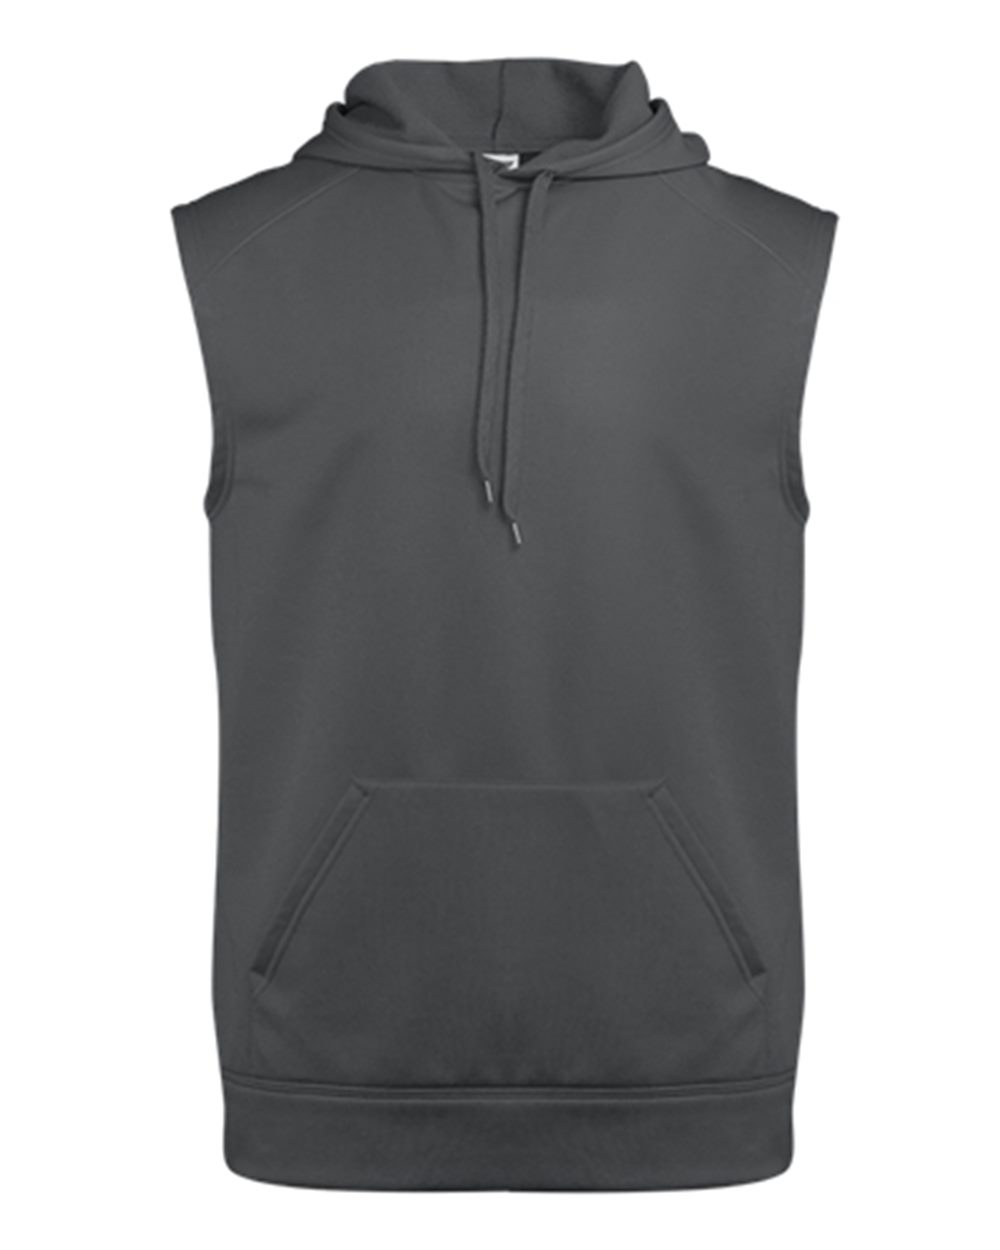 Badger 1430 - Sleeveless Performance Fleece Hooded Pullover $29.71